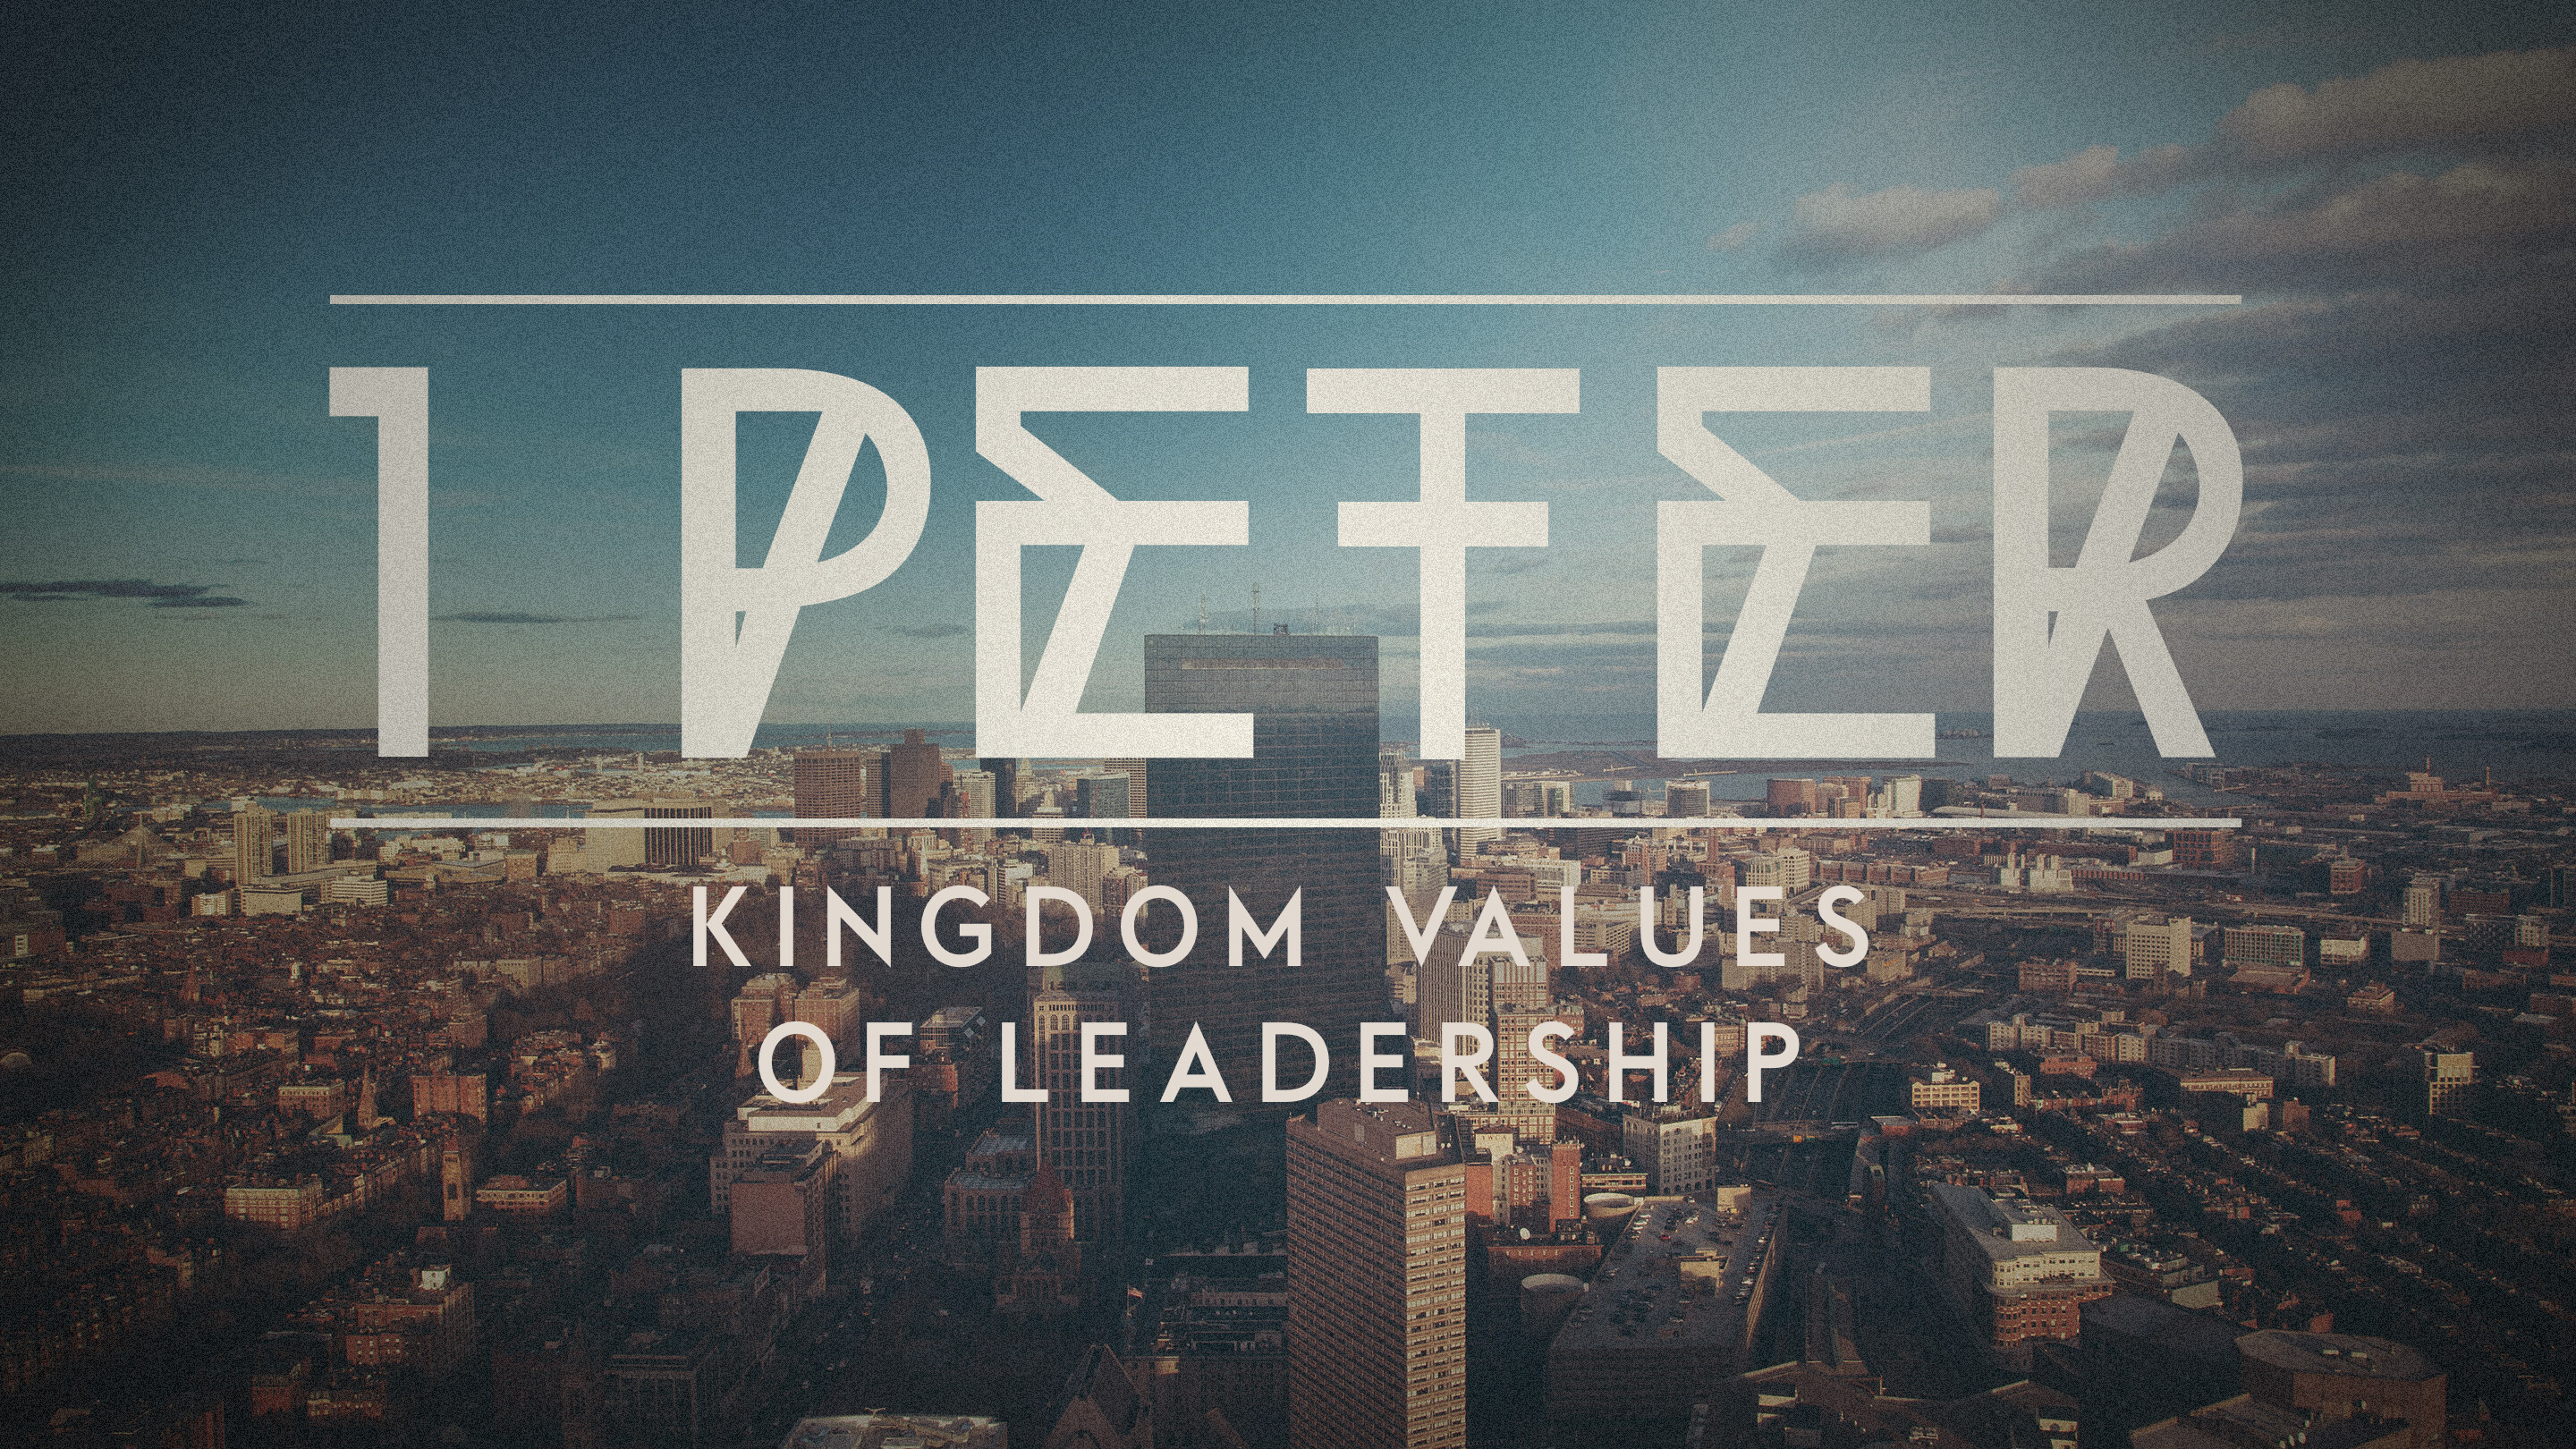 Kingdom Values of Leadership